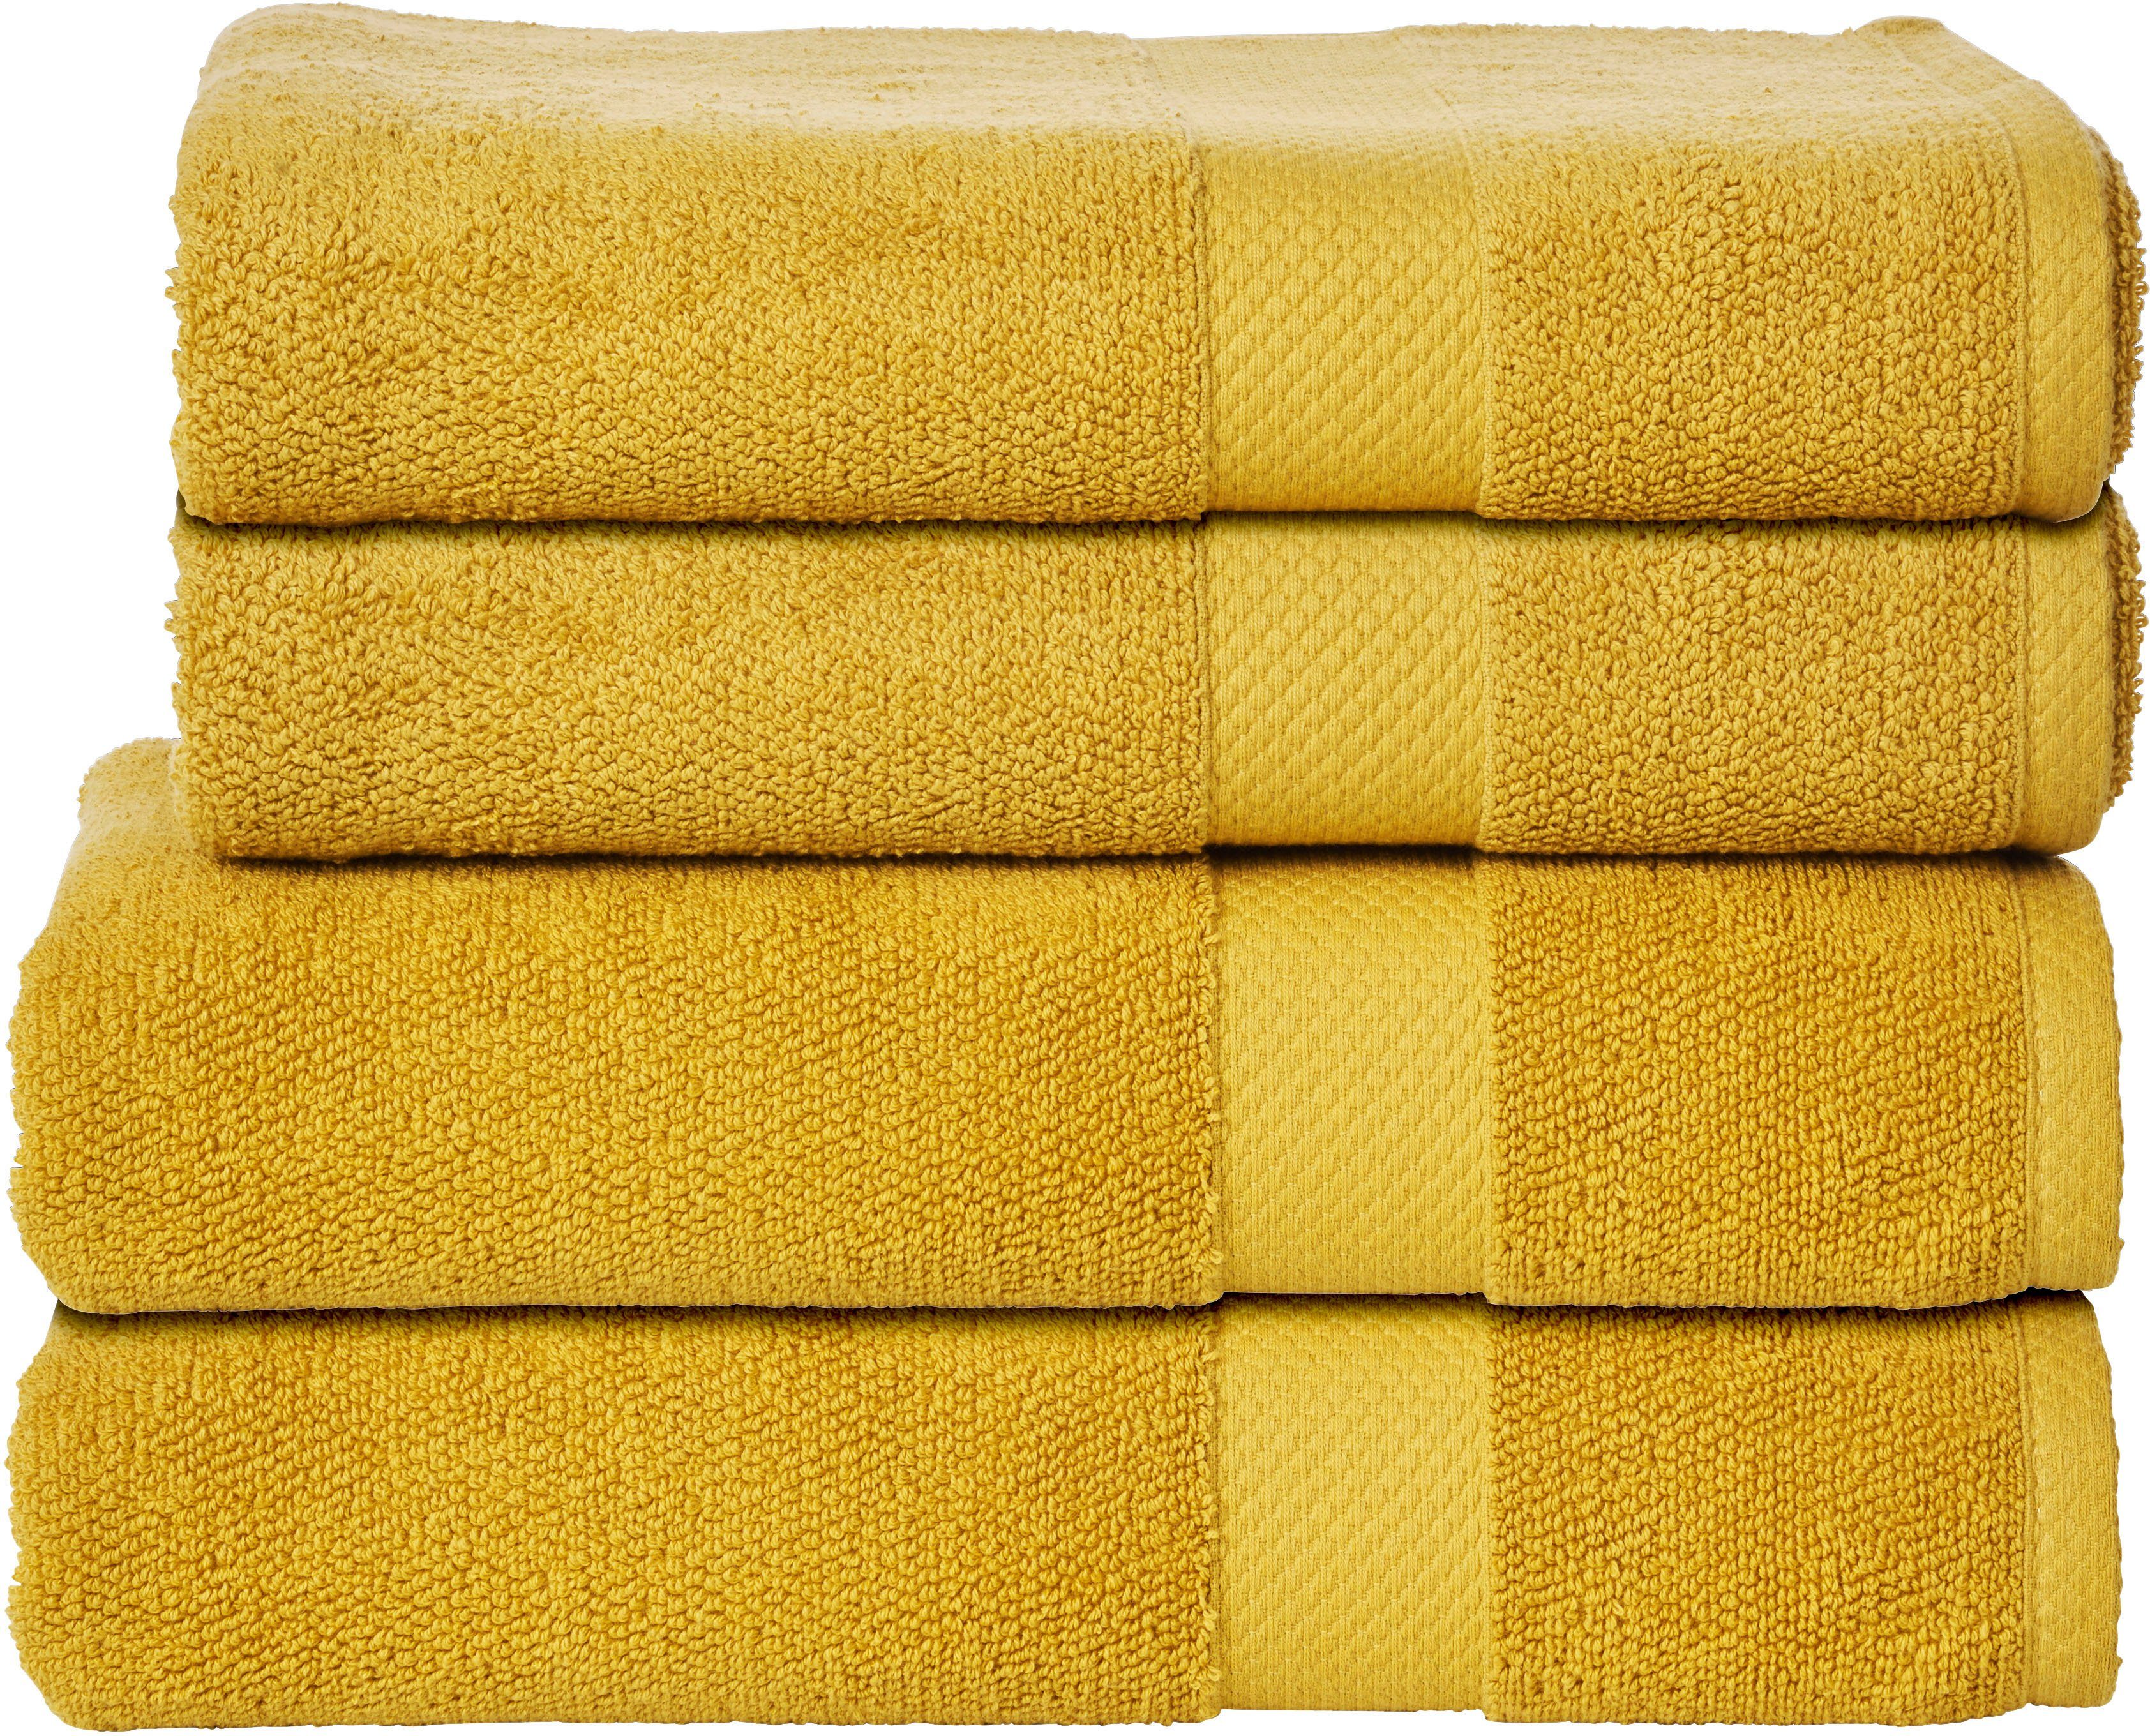 Goldene Handtücher online kaufen » Gold Handtücher | OTTO | Alle Handtücher